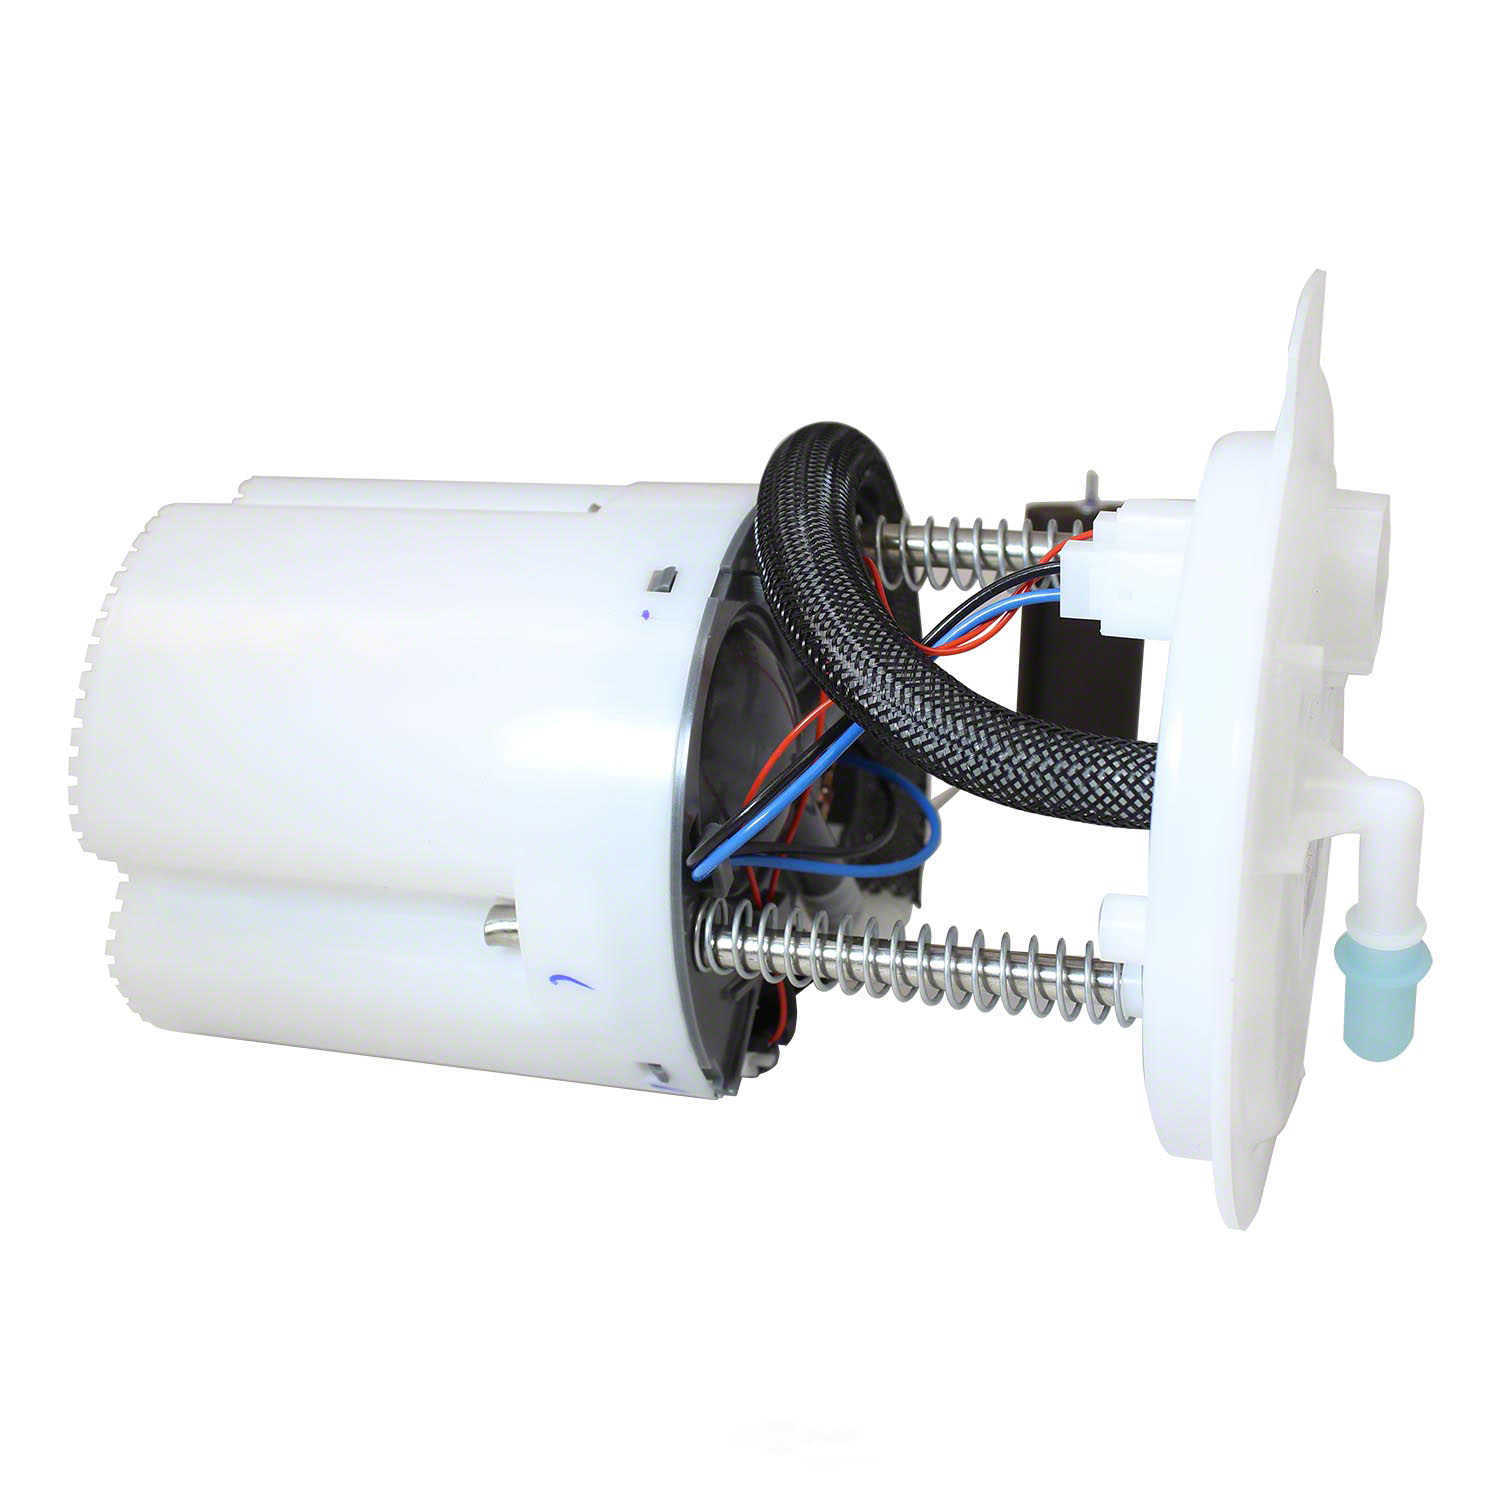 MOTORCRAFT - Fuel Pump And Sender Assembly - MOT PFS-474